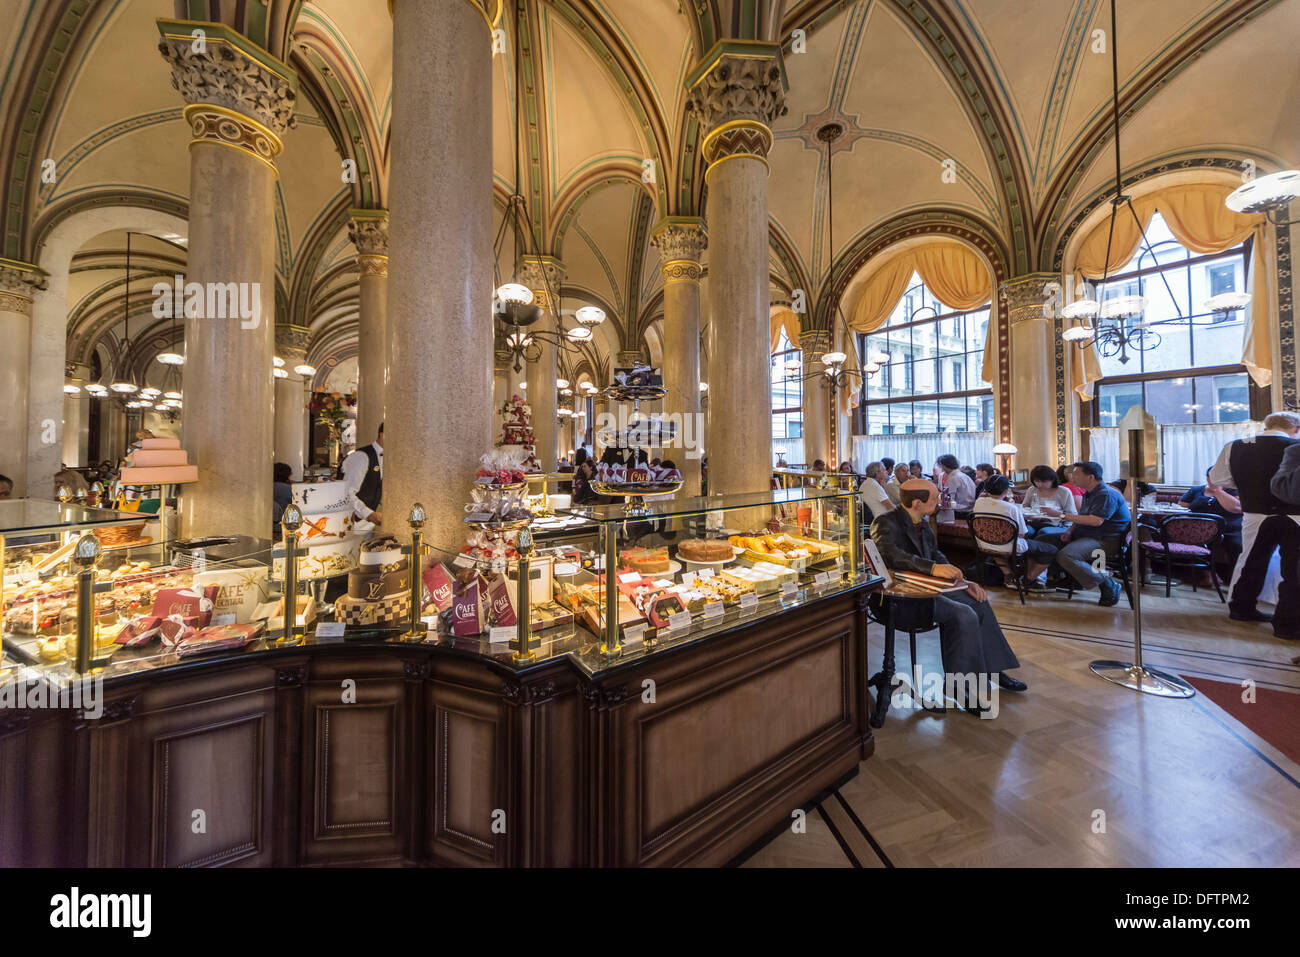 Cafe Central, Vienna, Vienna State, Austria Stock Photo